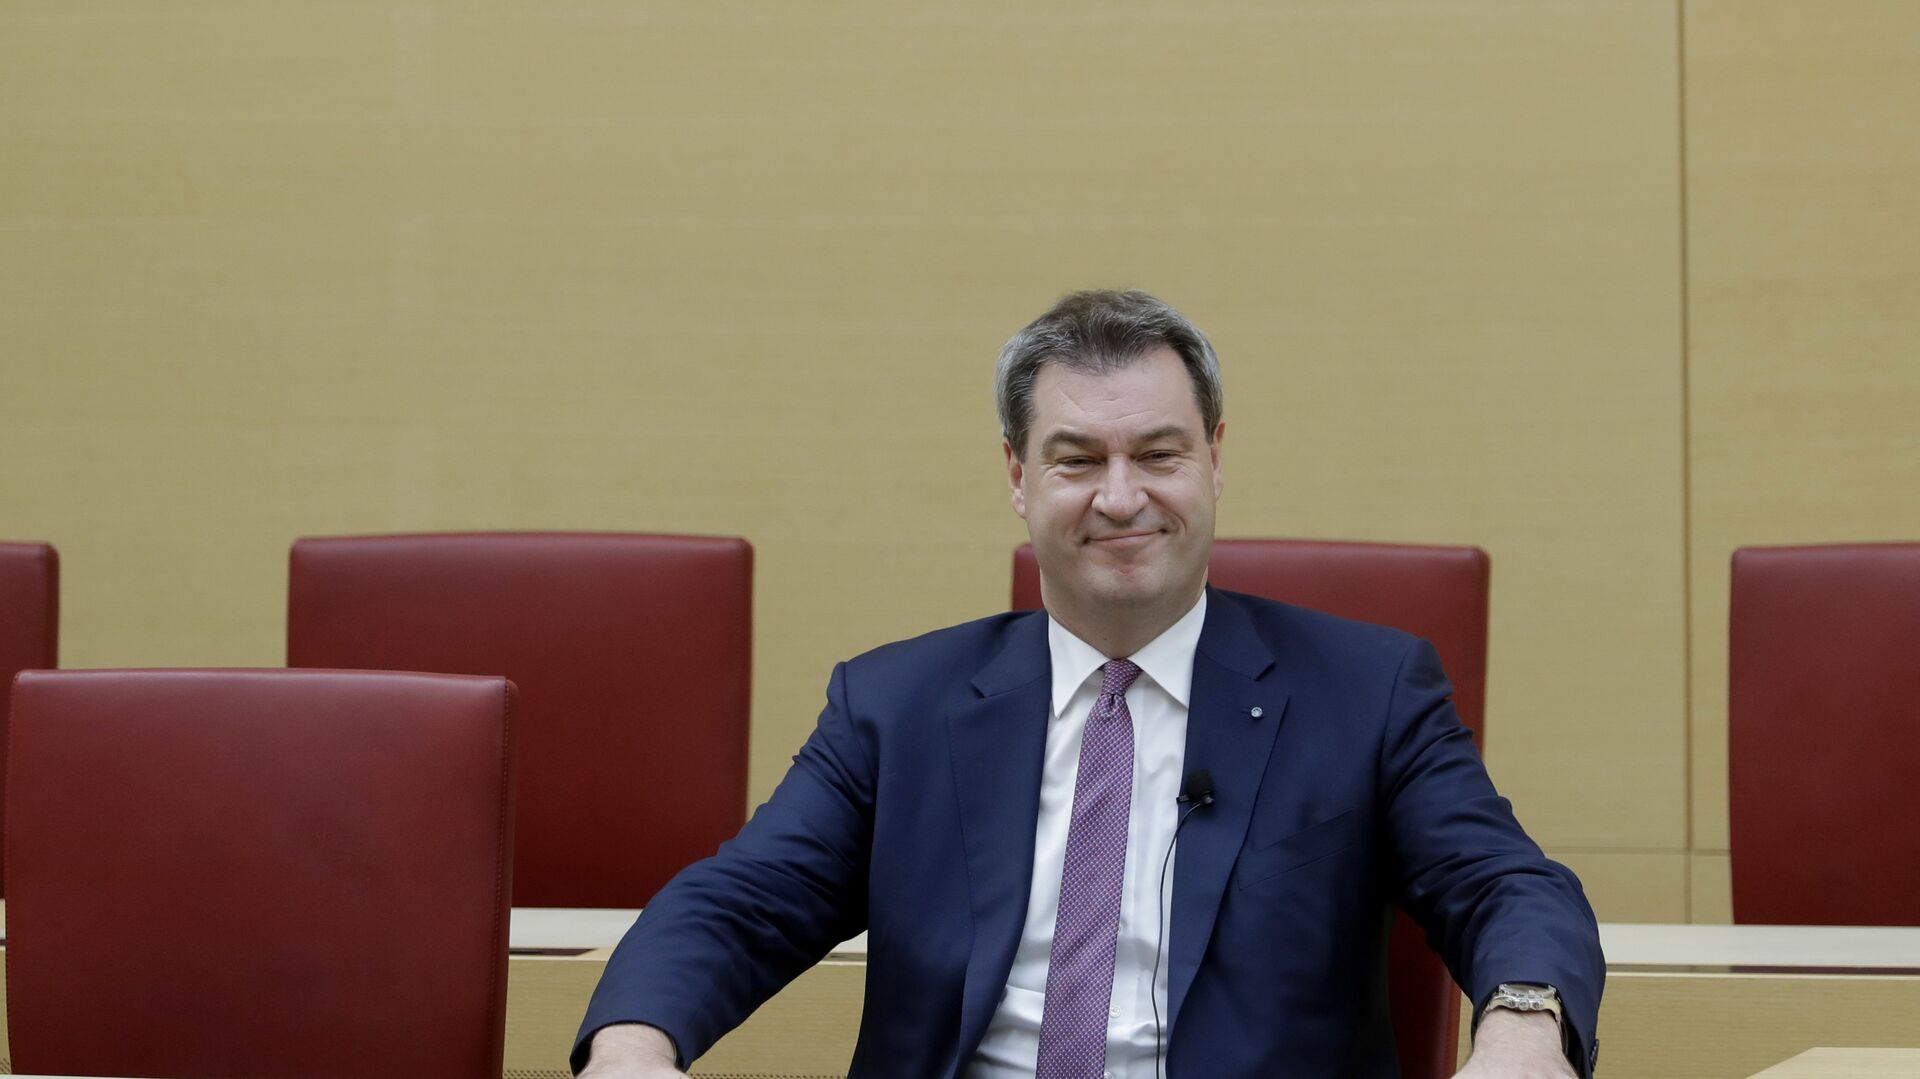 Маркус Зодер в Баварском парламенте после того как он вновь избран премьер-министром Баварии. 6 ноября 2018 - РИА Новости, 1920, 11.04.2021